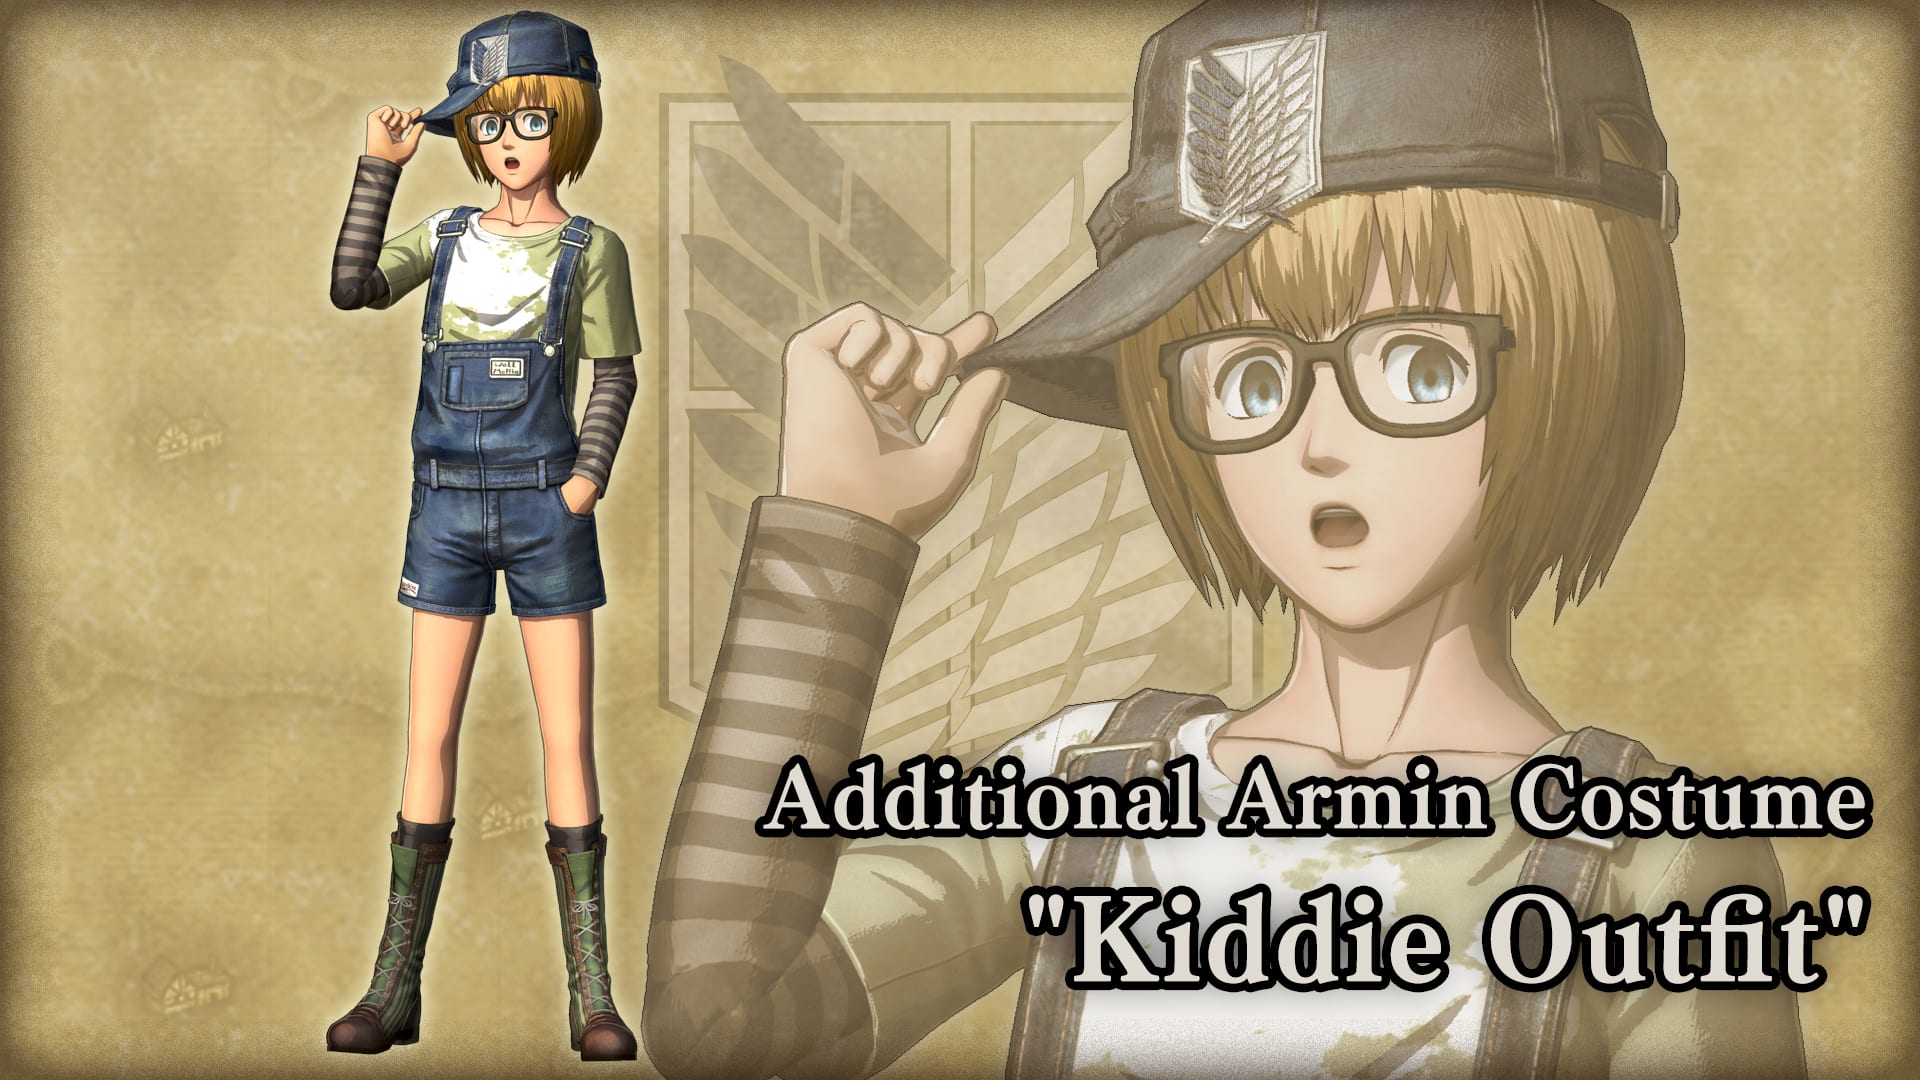 Roupa adicional para Armin, Kiddie